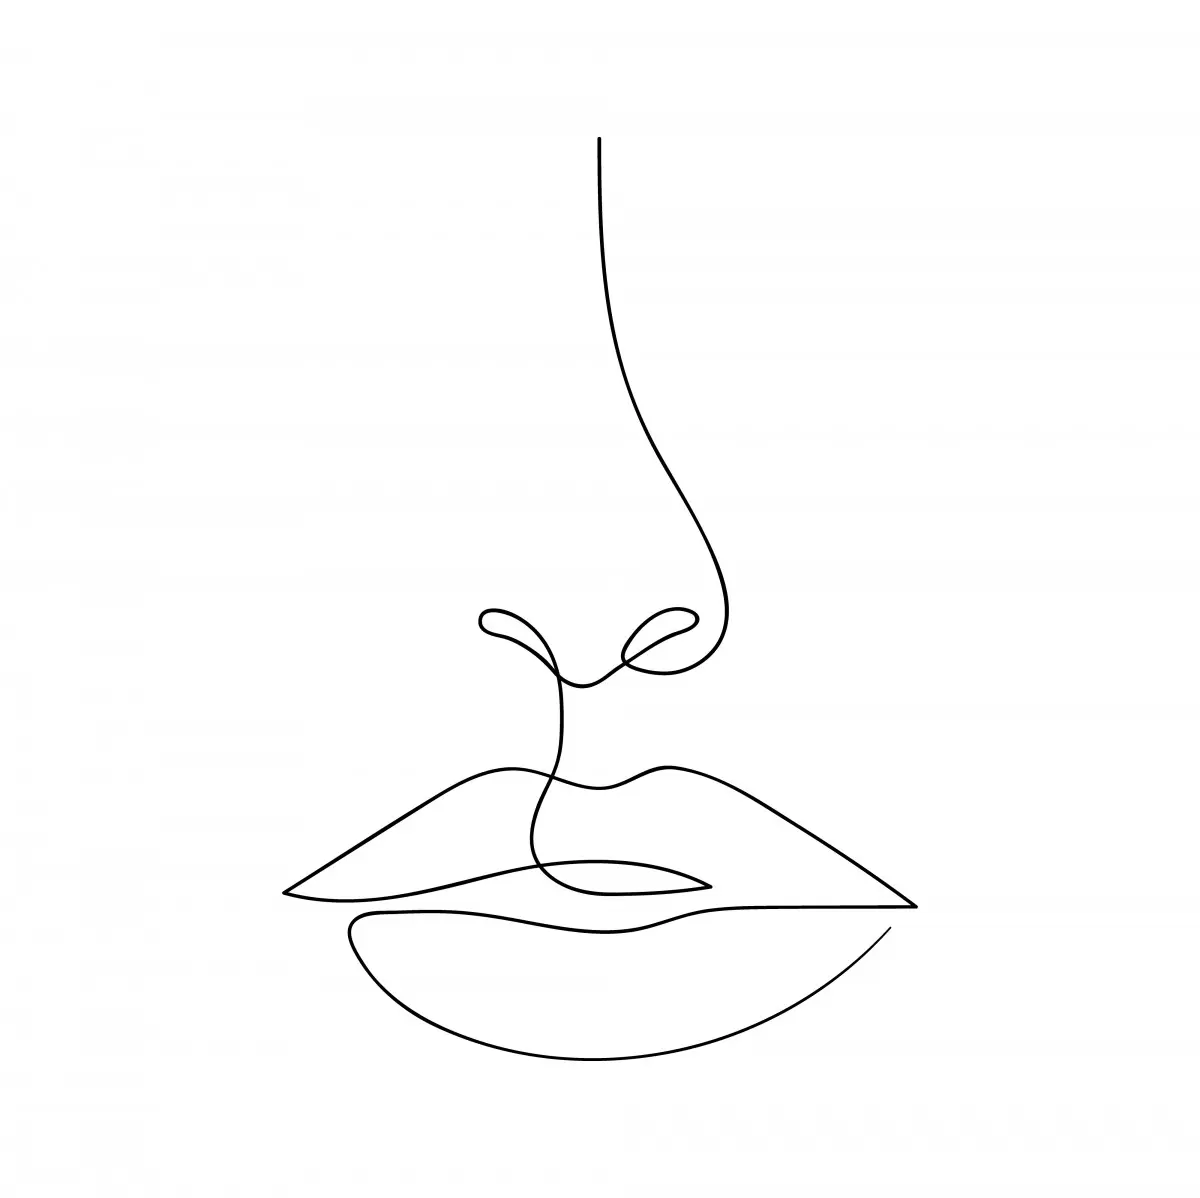 בשפתיים חתומות - Artpicked Modern - תמונות לחדר רחצה מינימליסטי ציור בקו אחד  - מק''ט: 376382